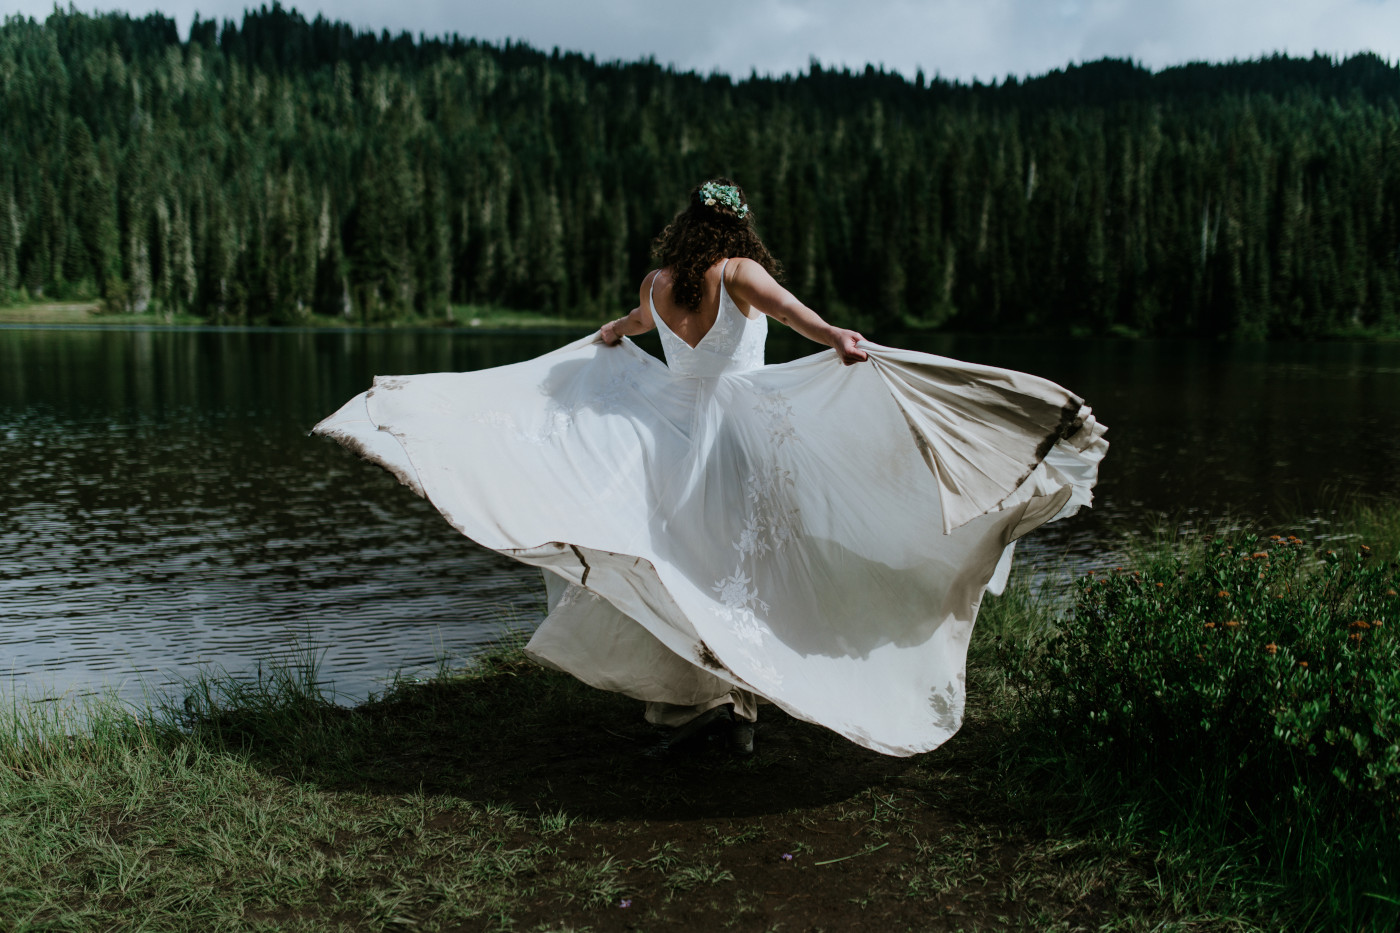 Tasha spins in her dress. Elopement photography at Mount Rainier by Sienna Plus Josh.